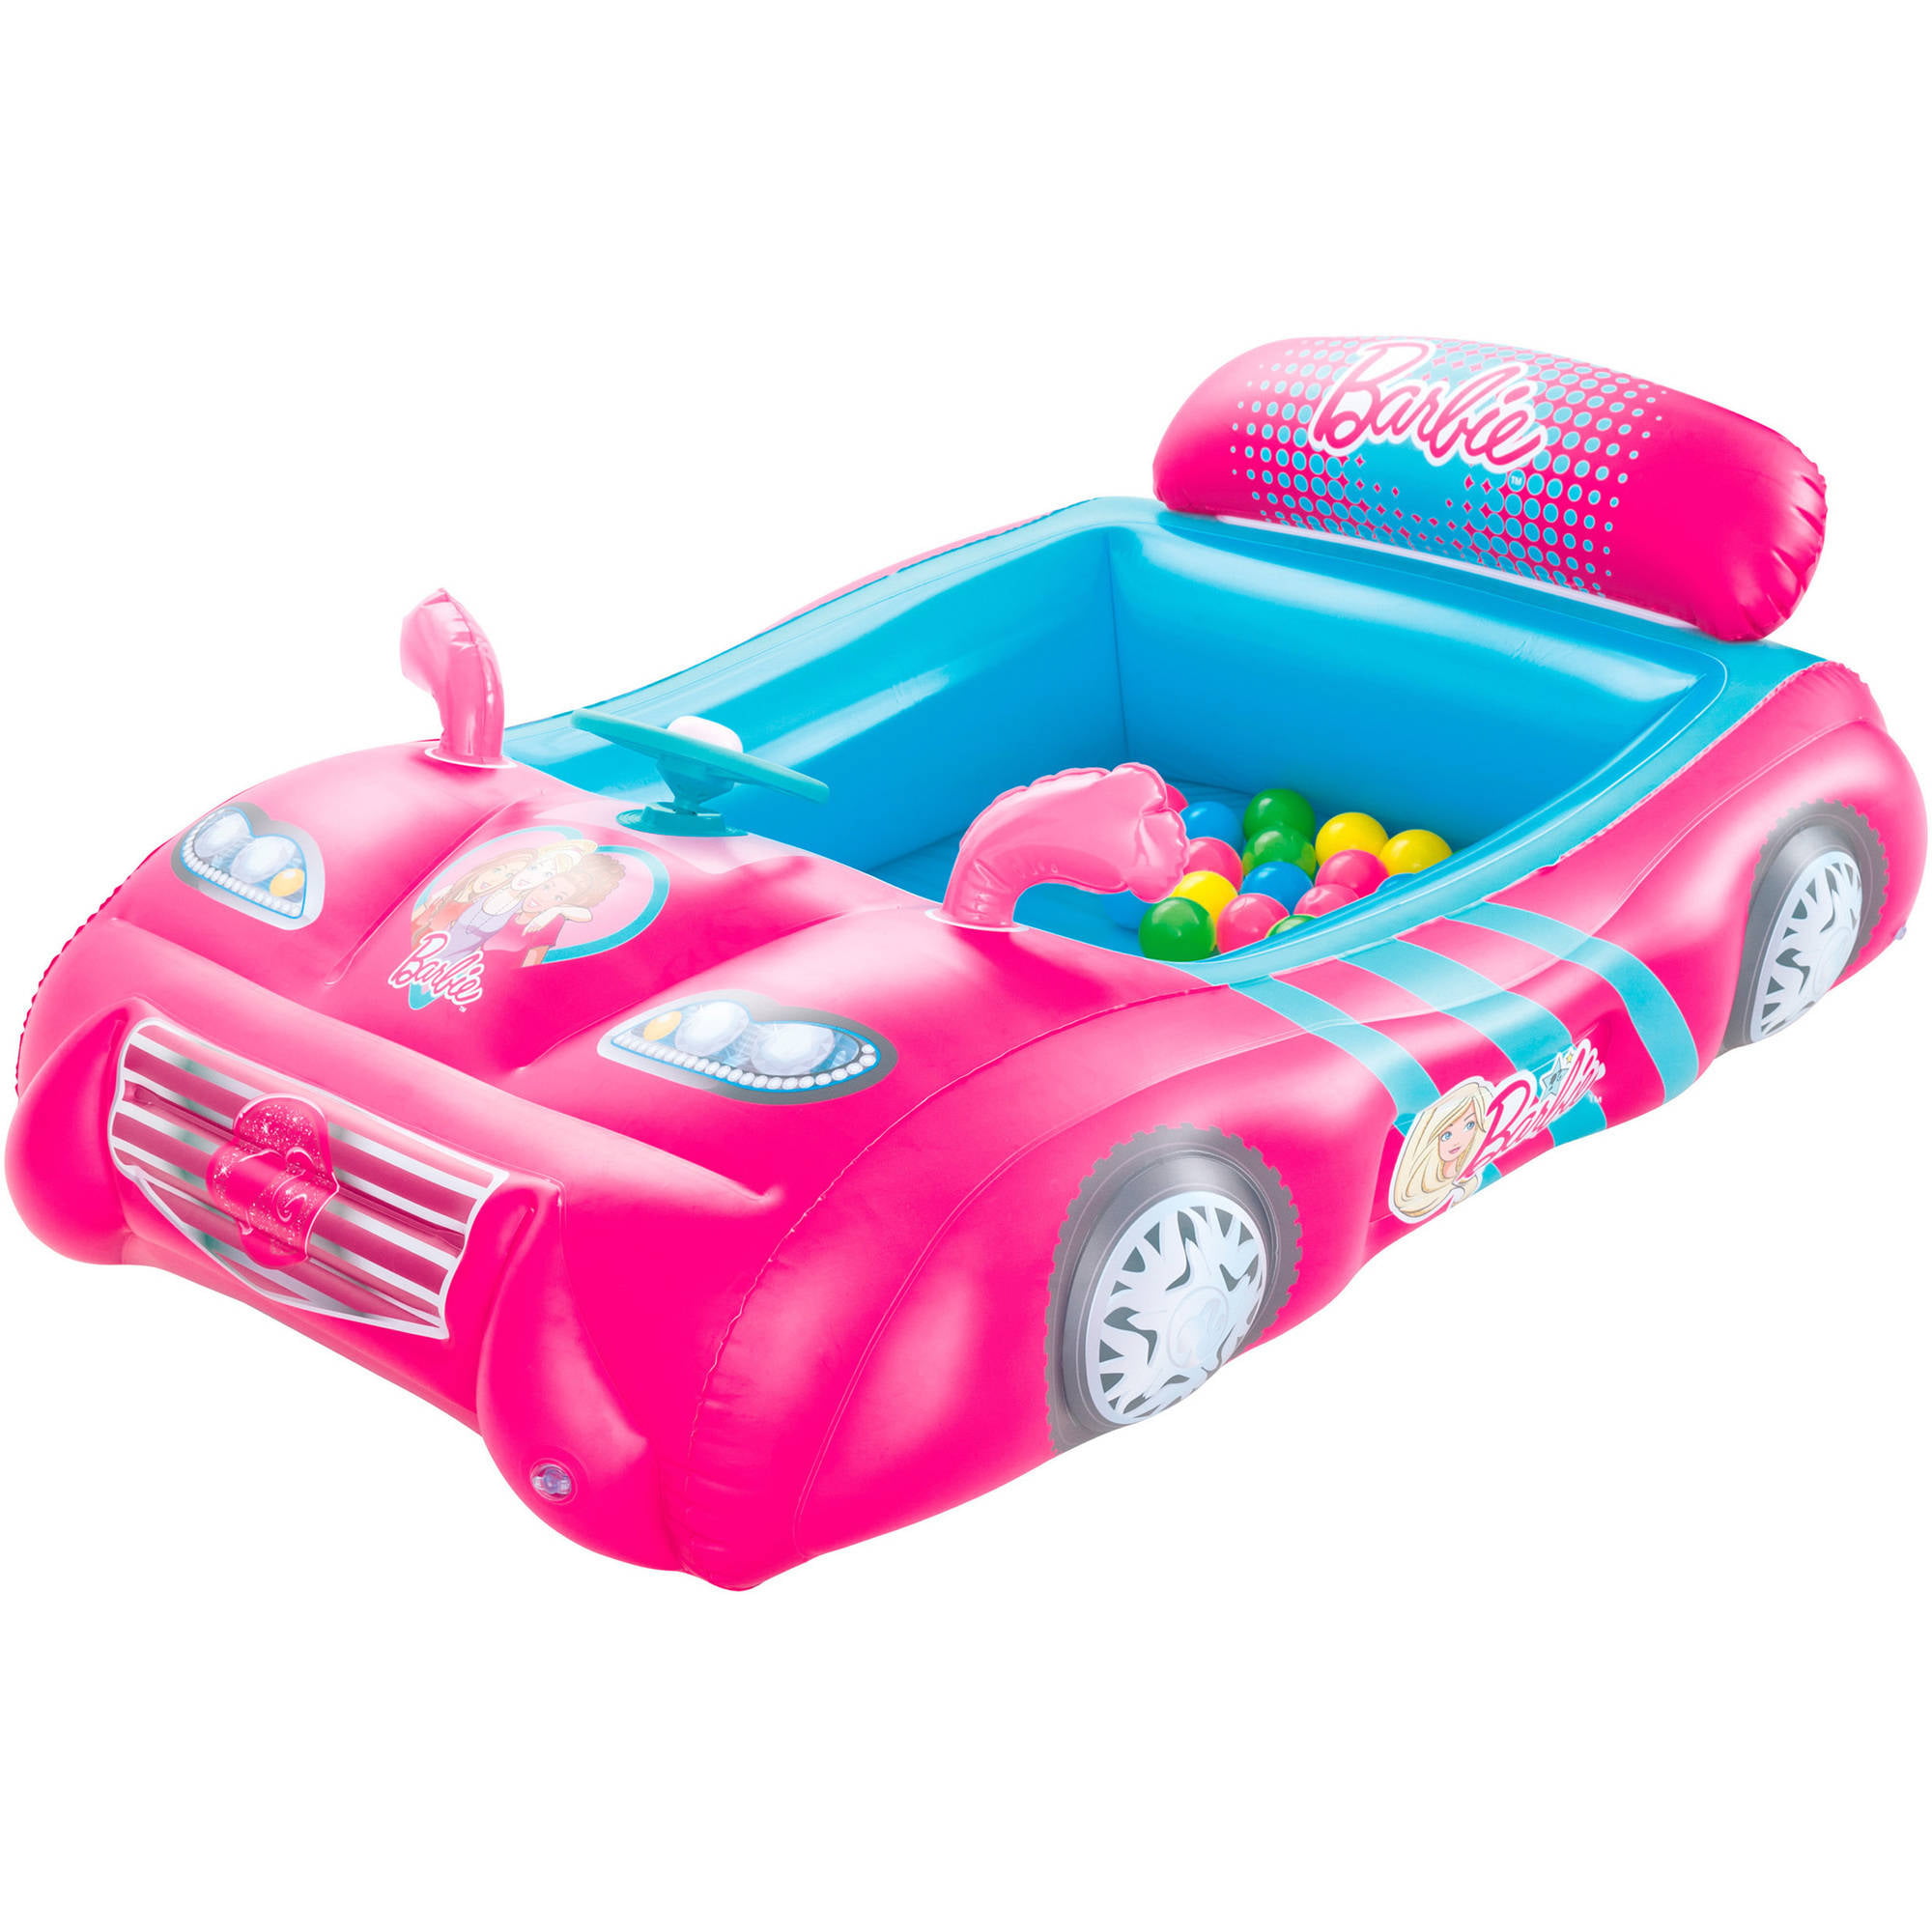 35 HQ Photos Barbie Pink Sports Car : Wat Vinden jullie de mooiste auto ?? · flockonderwerp